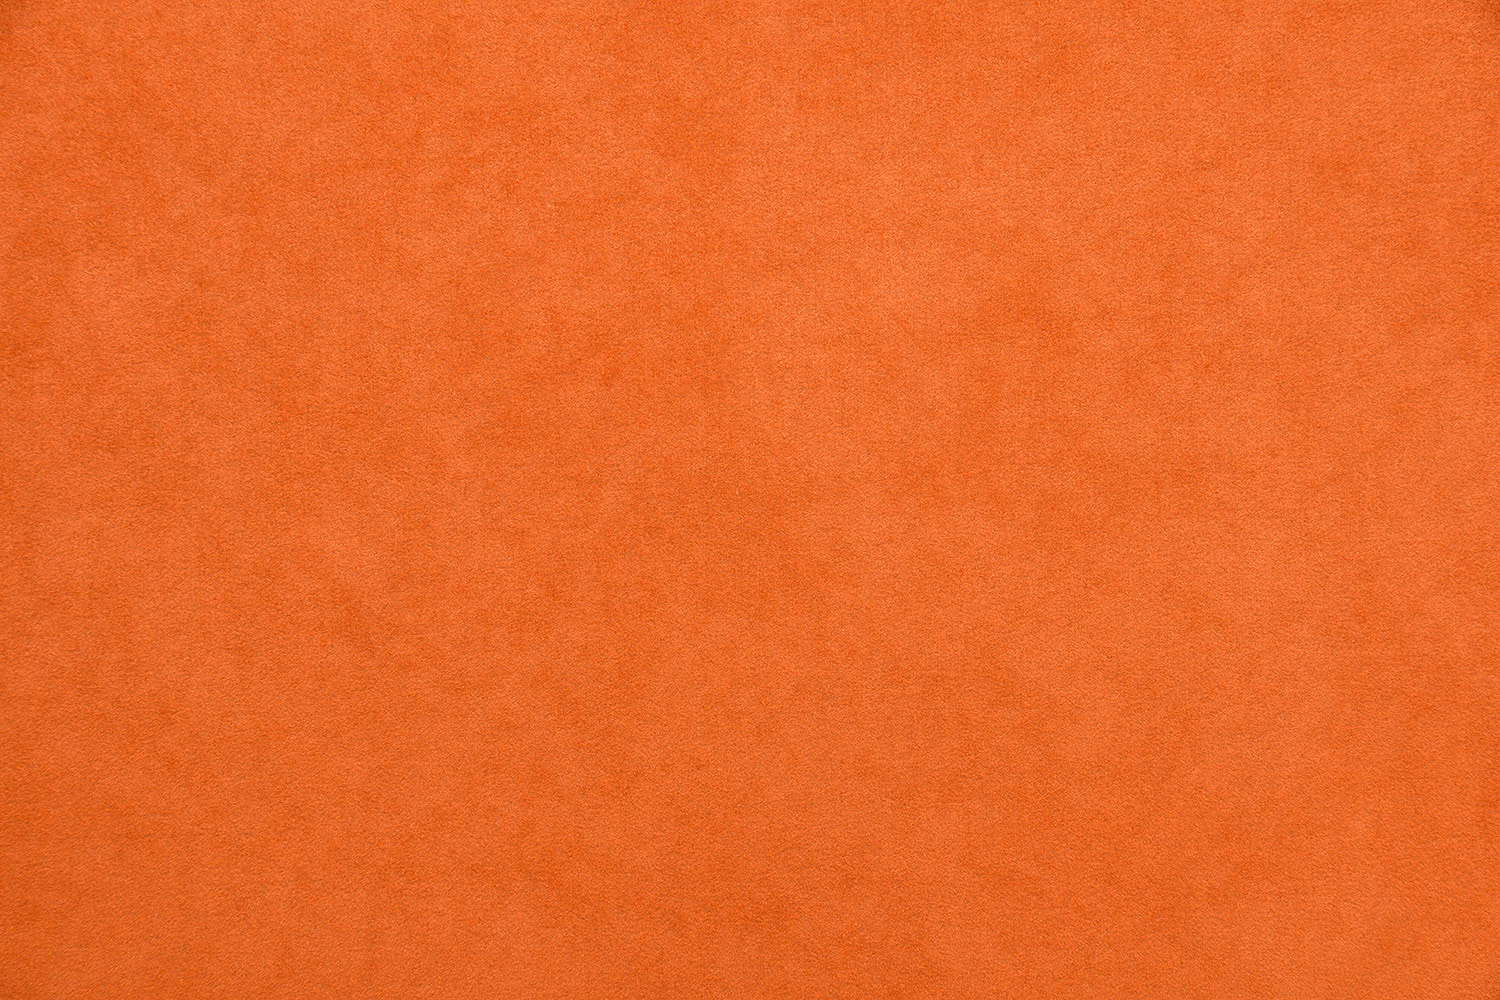 Оранжевый цвет